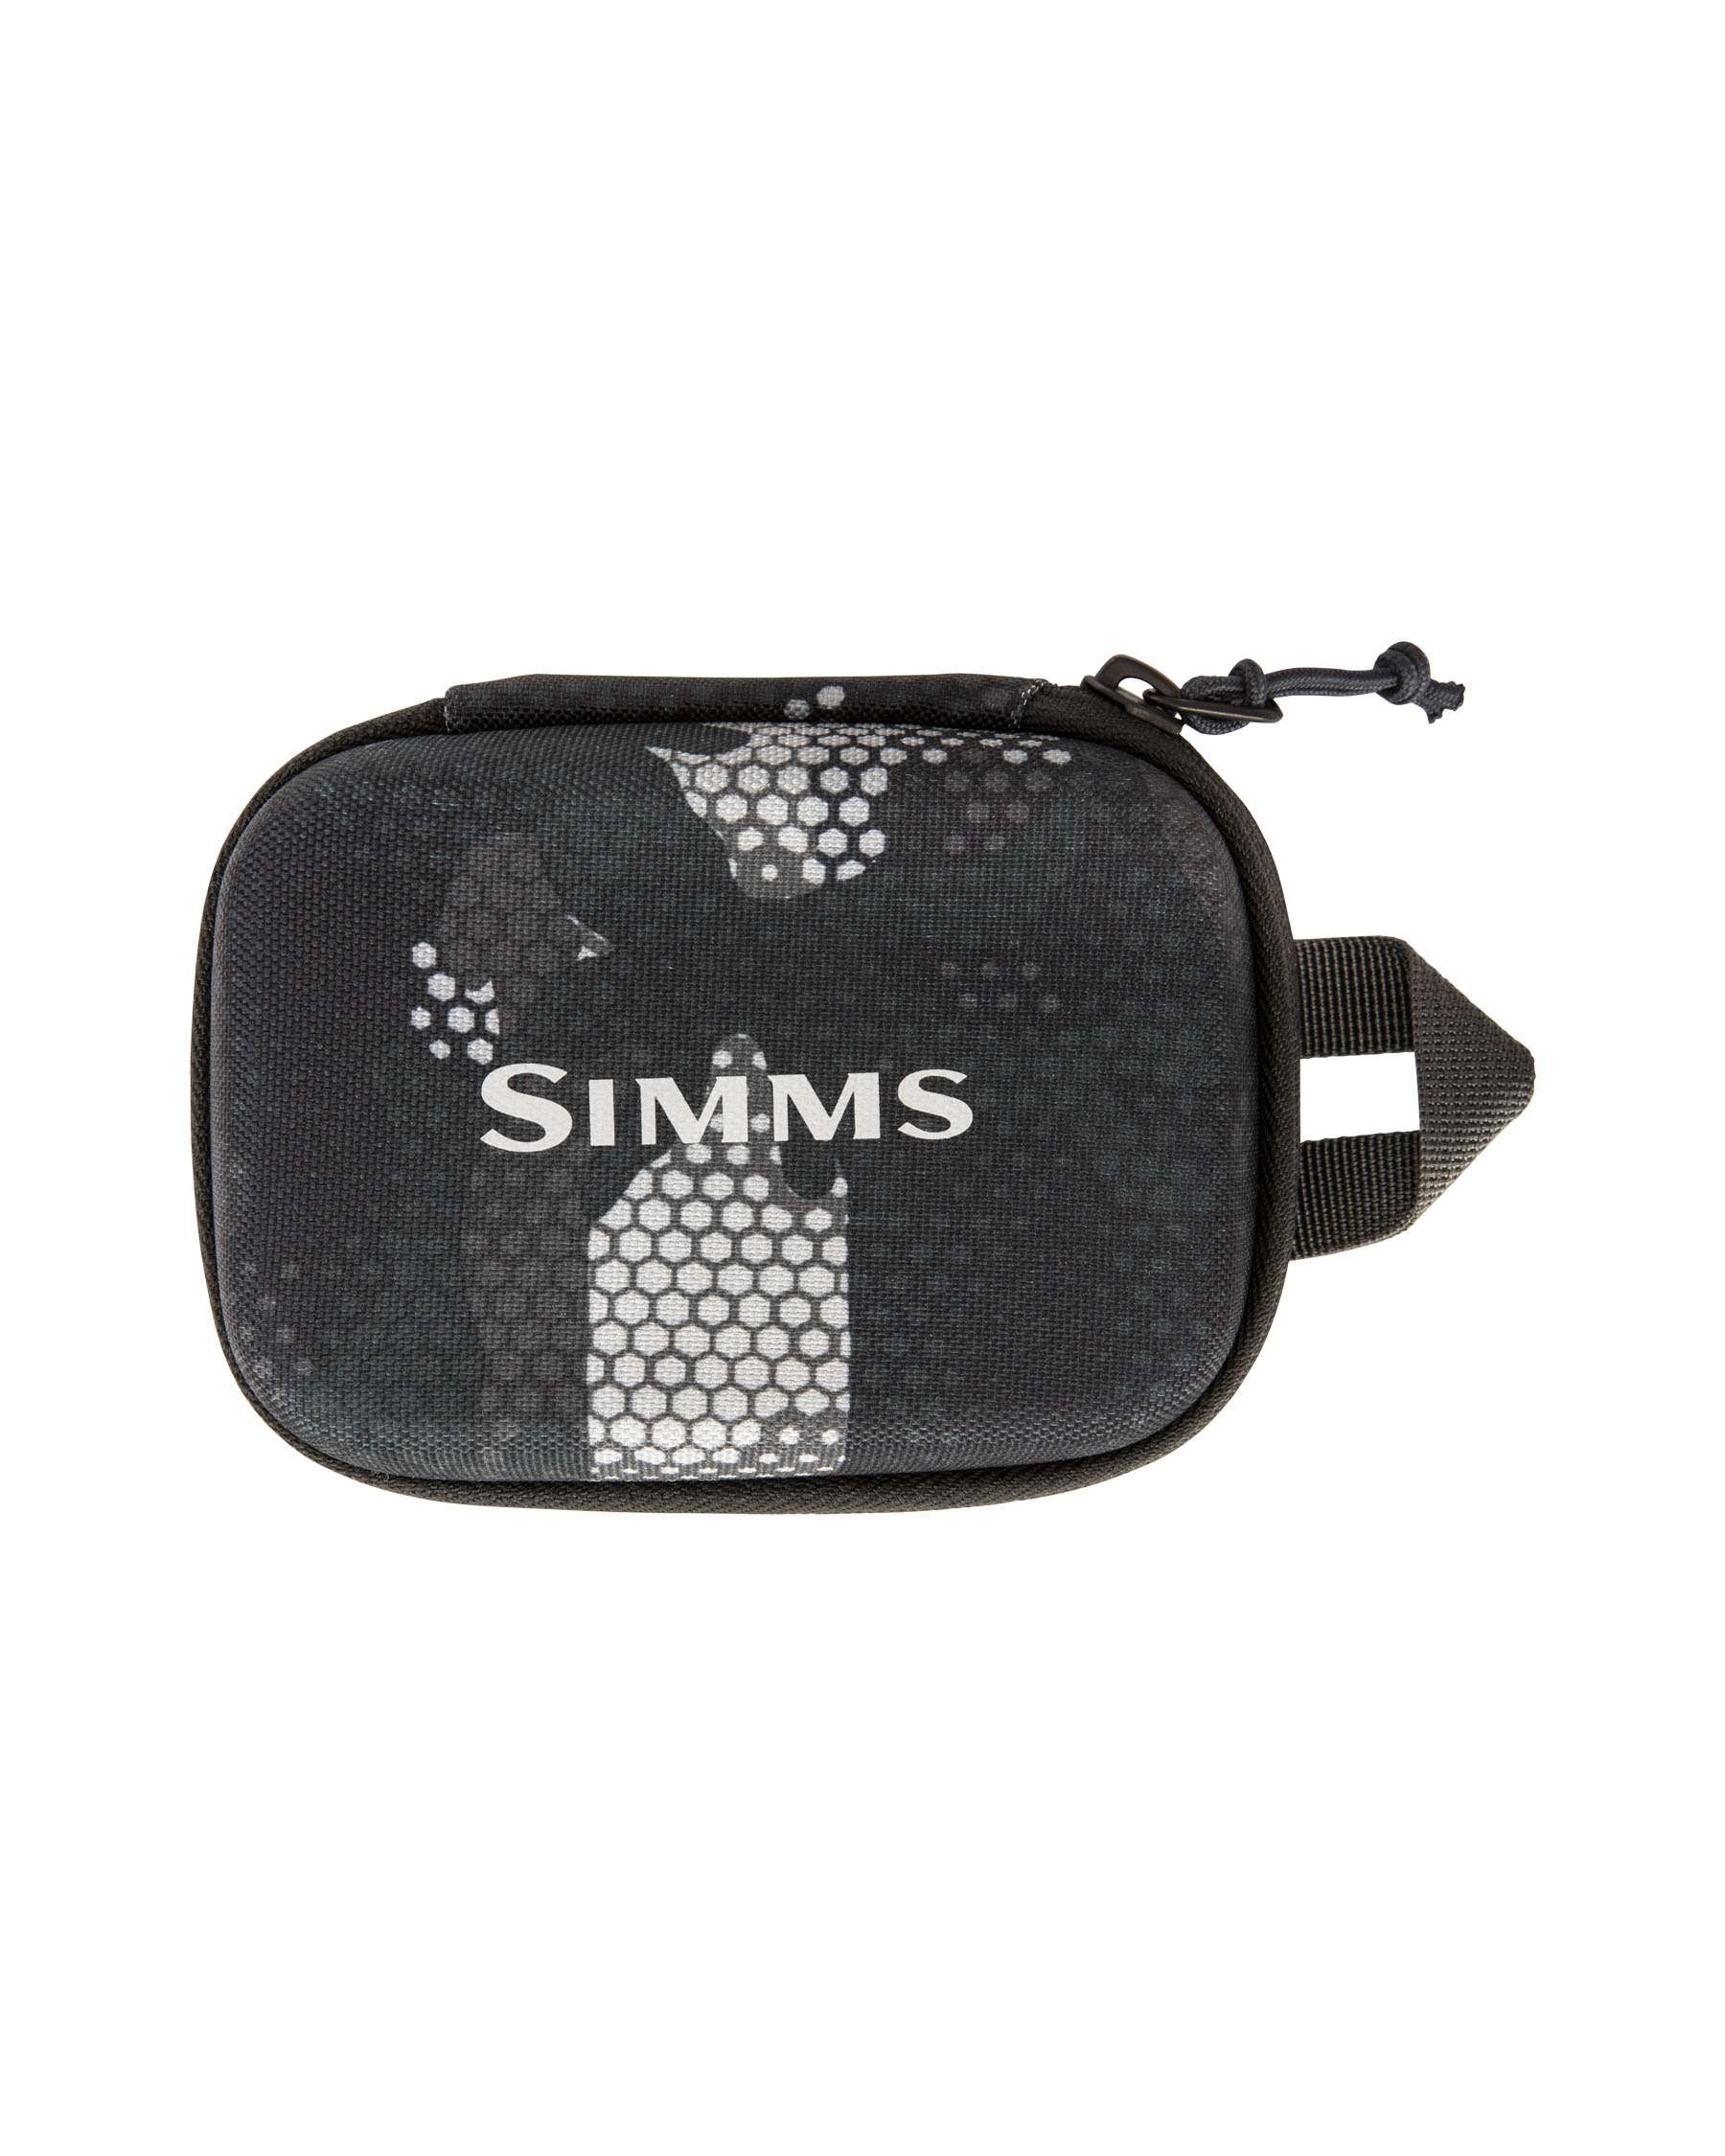 Whistles Bibi Mini Keyring Bag, Taupe at John Lewis & Partners